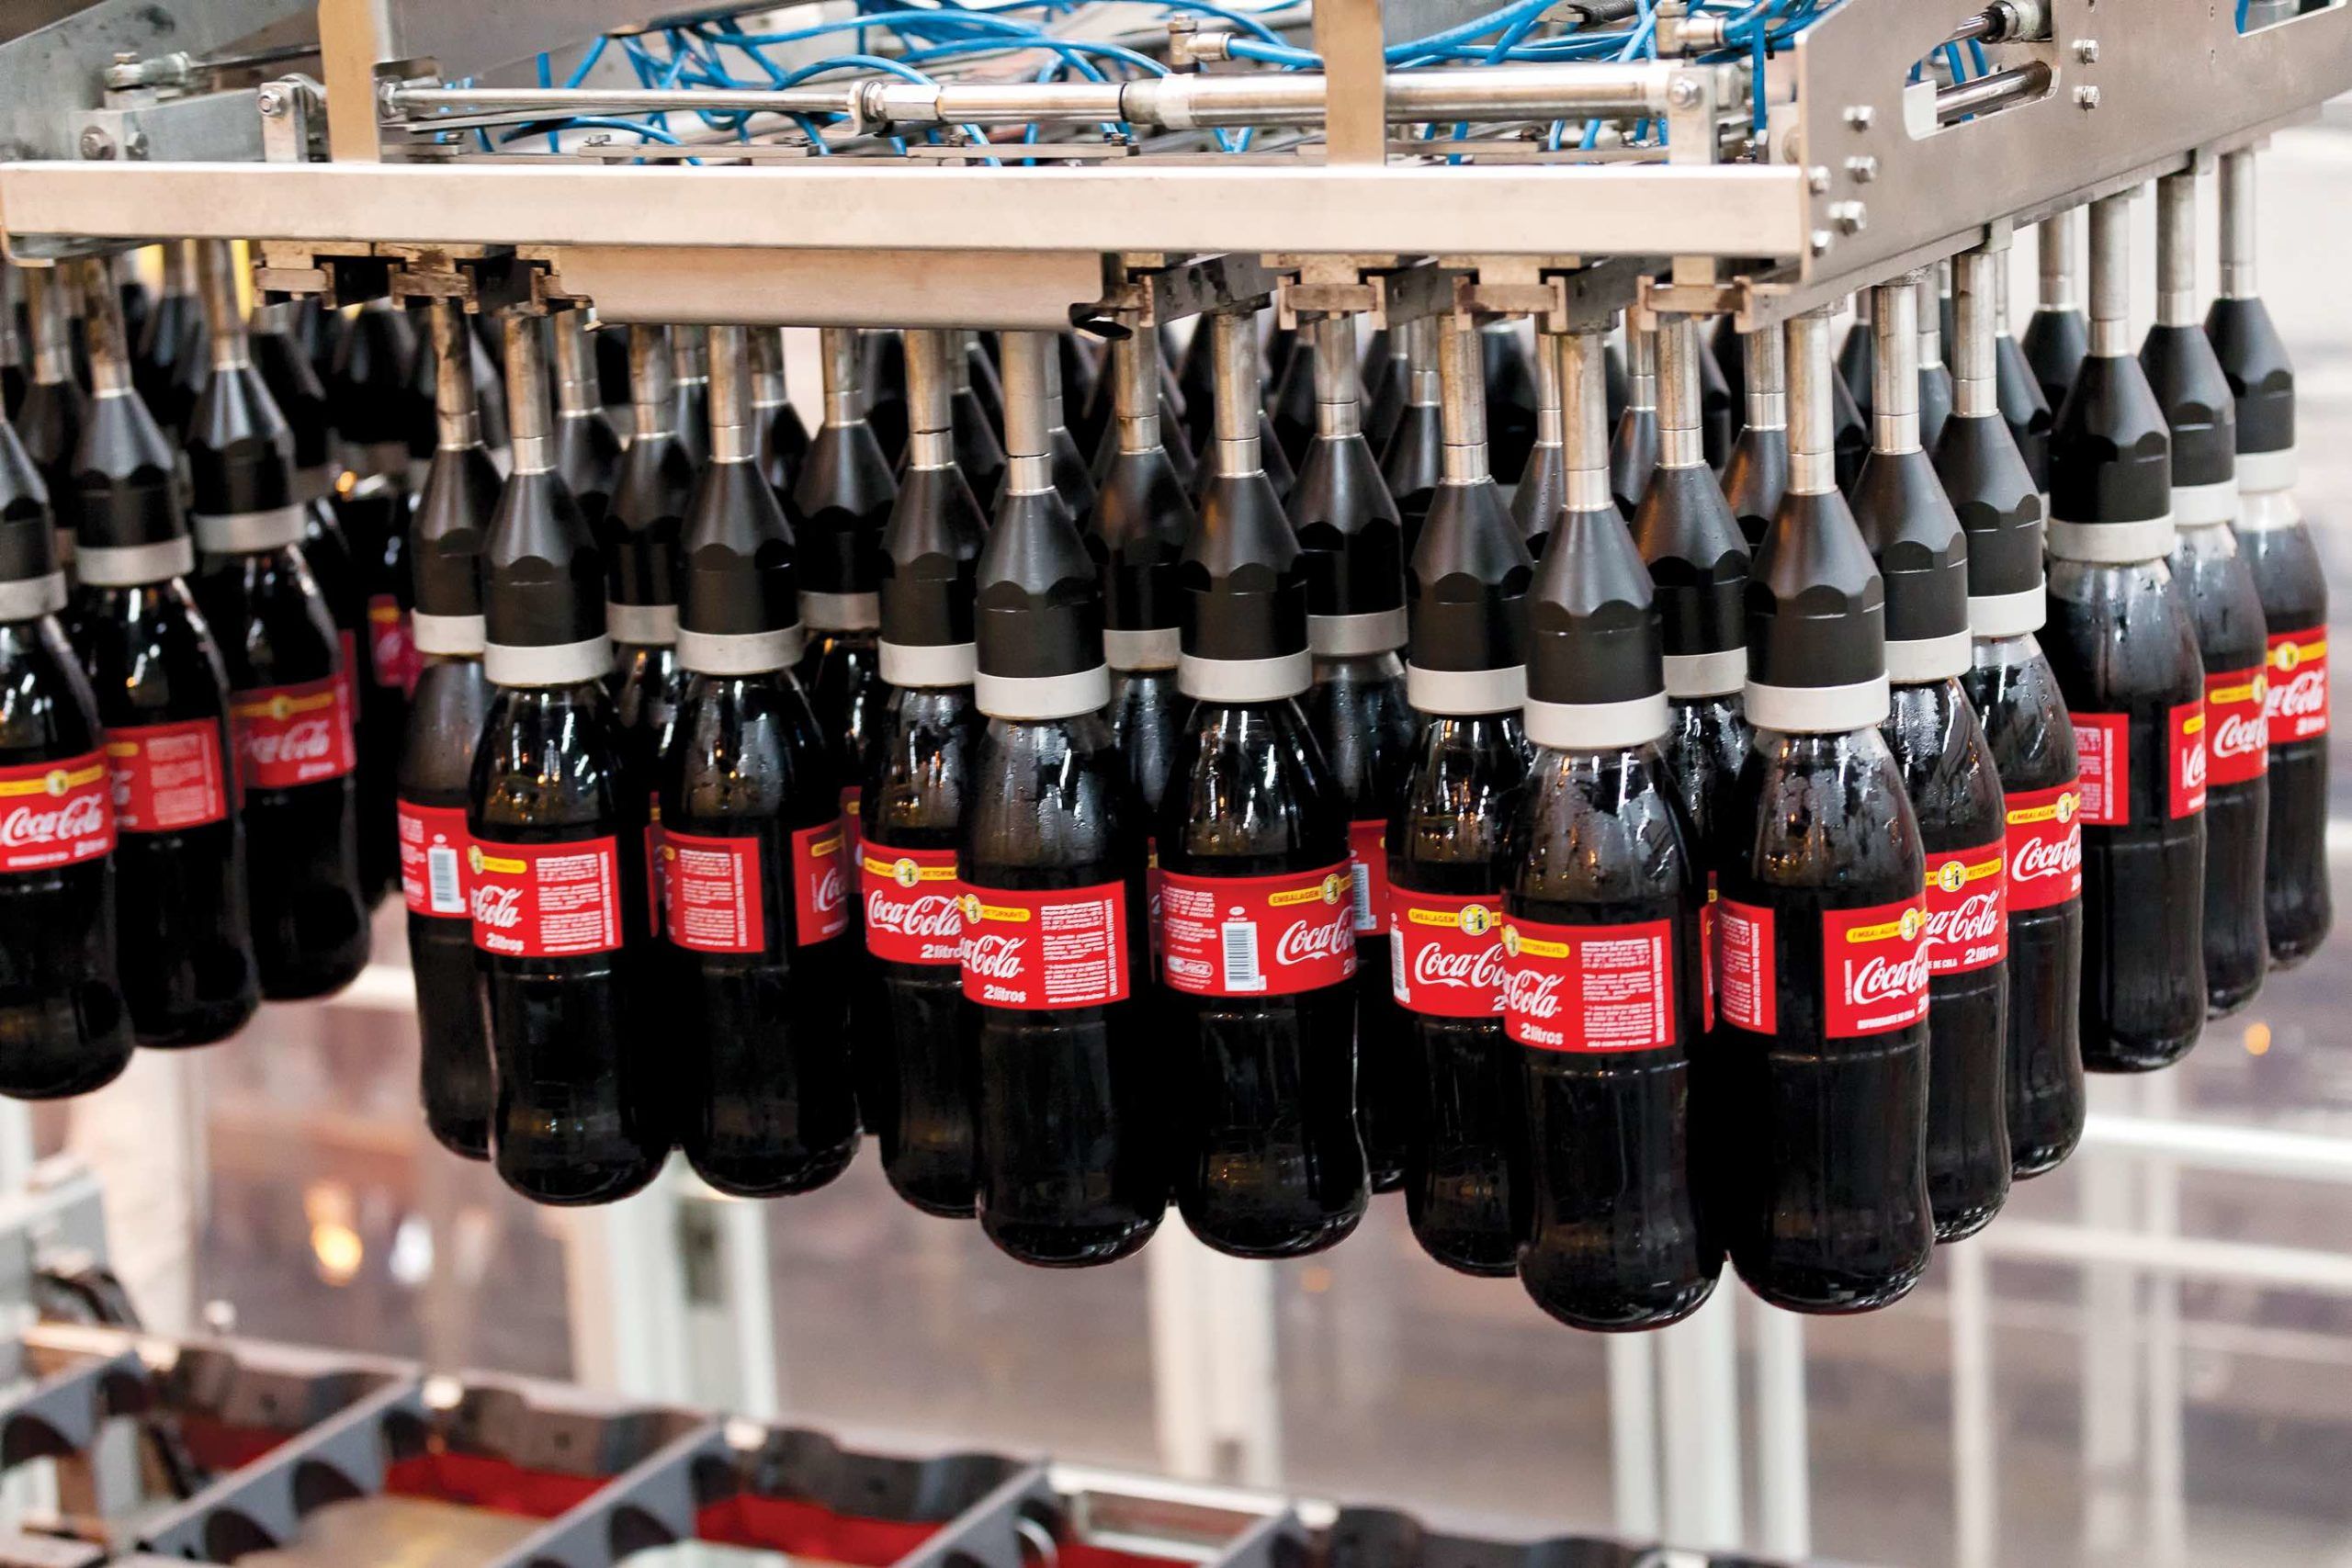 Coca-Cola FEMSA informó que compró azúcar a PIASA por un valor de 2,130 millones de pesos en los primeros nueves meses de 2022. Coca-Cola FEMSA reported that it purchased sugar from PIASA for Ps. 2.13 billion in the first nine months of 2022.